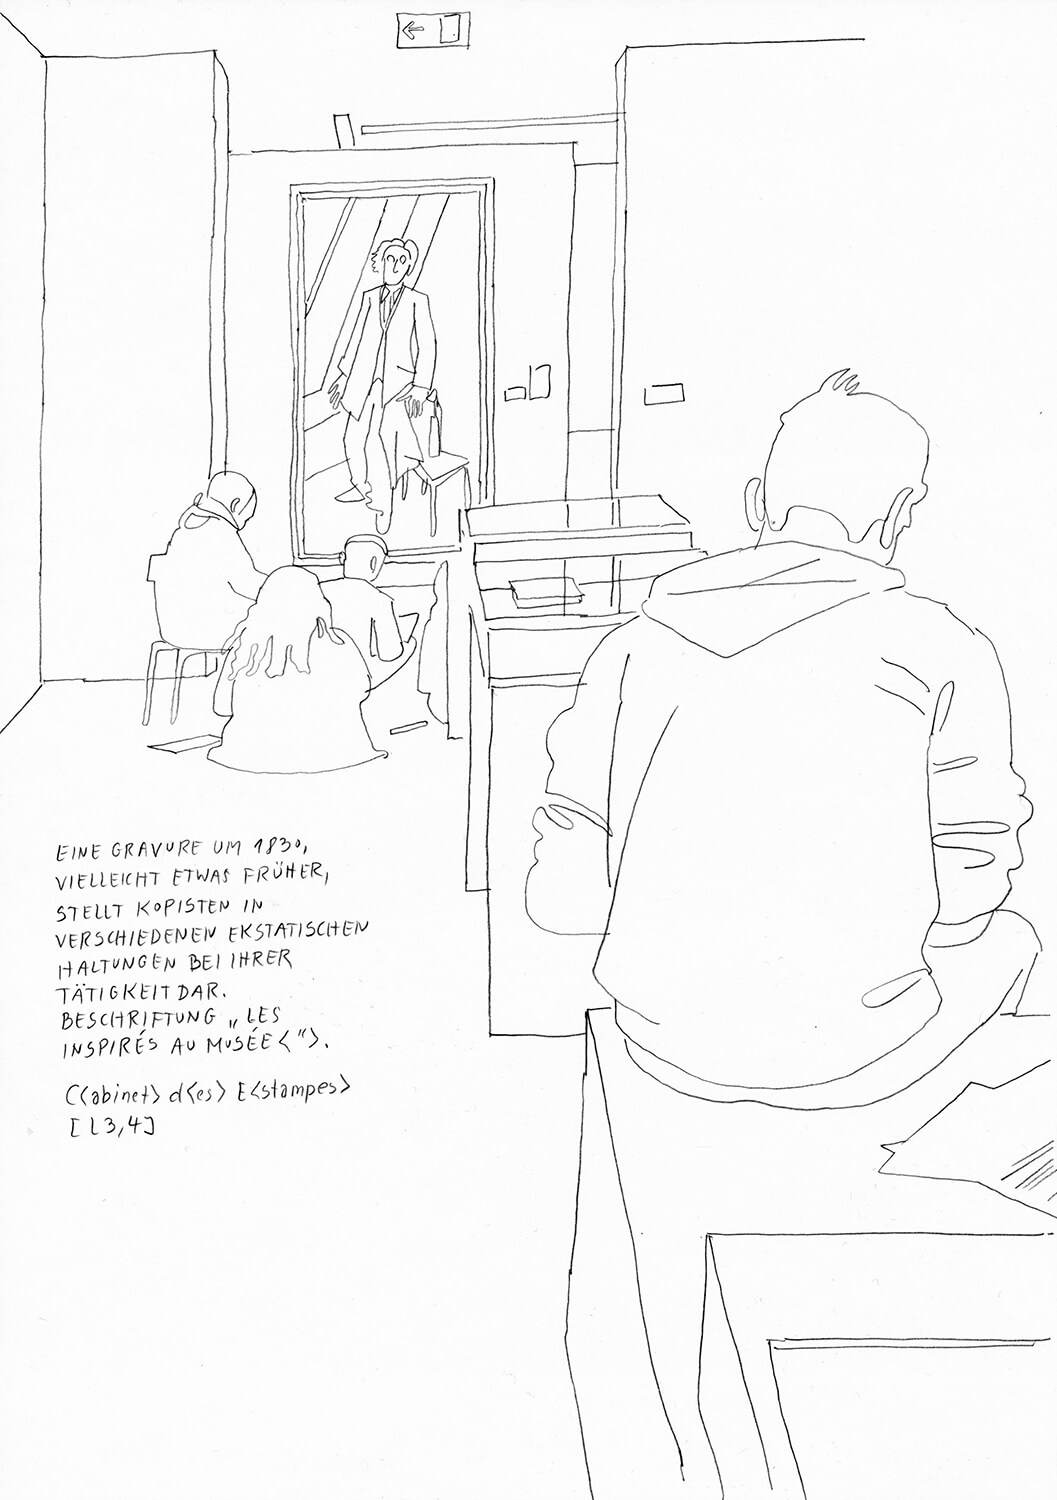 Matthias Beckmann, Passagen-Werk (106), 2019/2020, Bleistift auf Papier, 29,7 x 21 cm